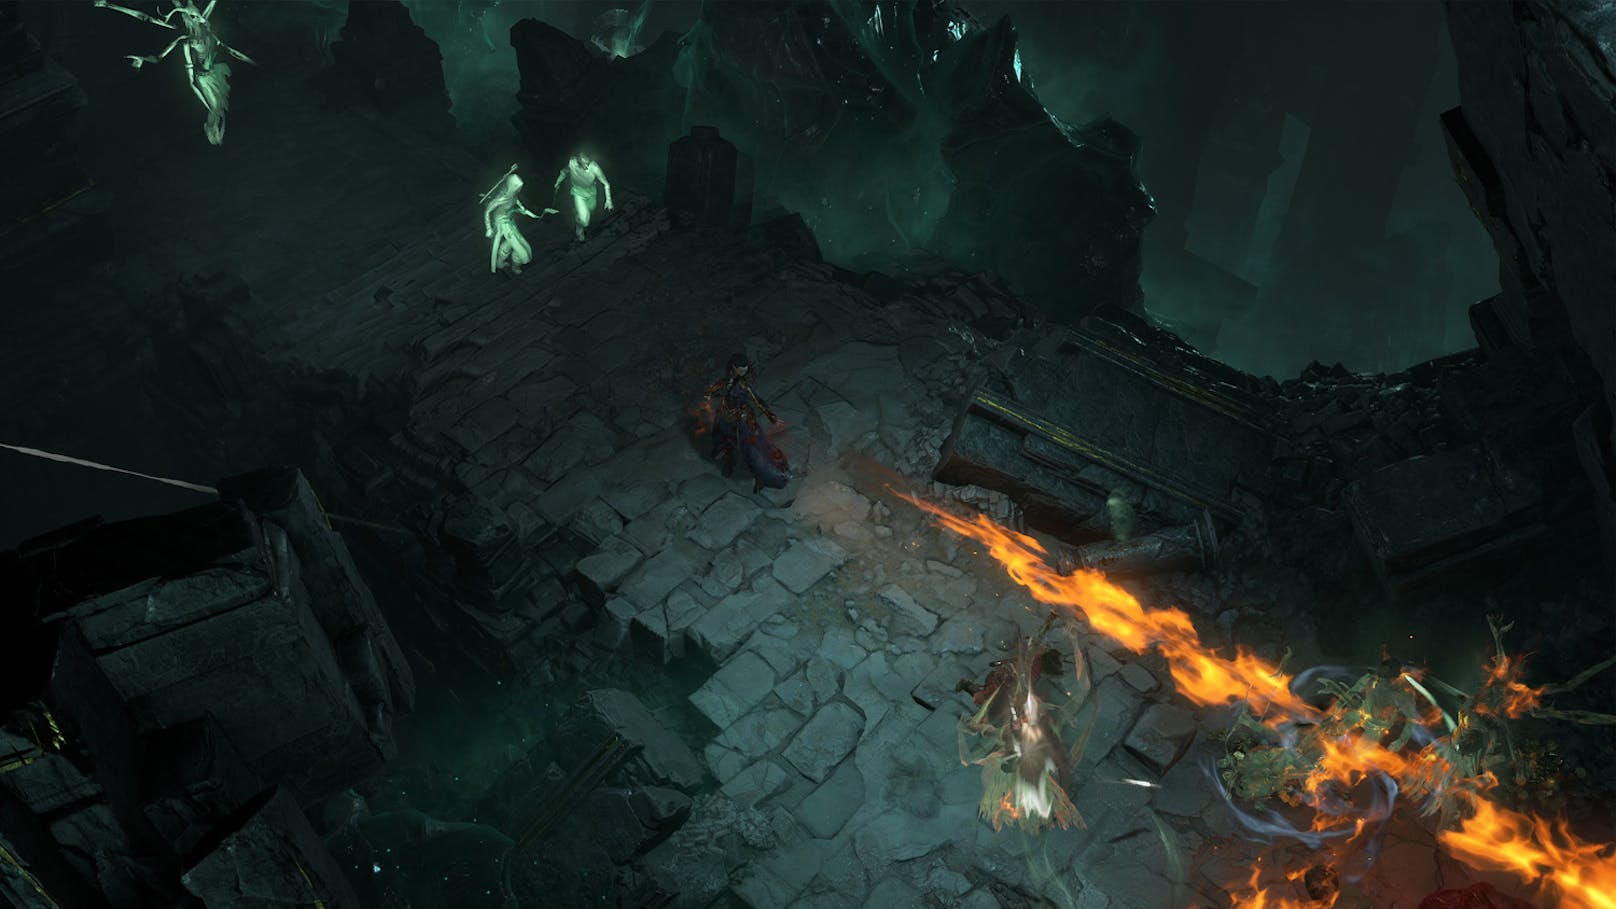 Damit schafft es Blizzard, dem Charakter nicht nur eine abwechslungsreiche Tiefe zu geben, sondern bietet Spielern zeitgleich auch einen weiteren Anreiz, um Diablo IV auch nach dem Ende der Hauptstory und Level 50 weiterzuspielen und die Welt von Sanktuario weiter zu erkunden.